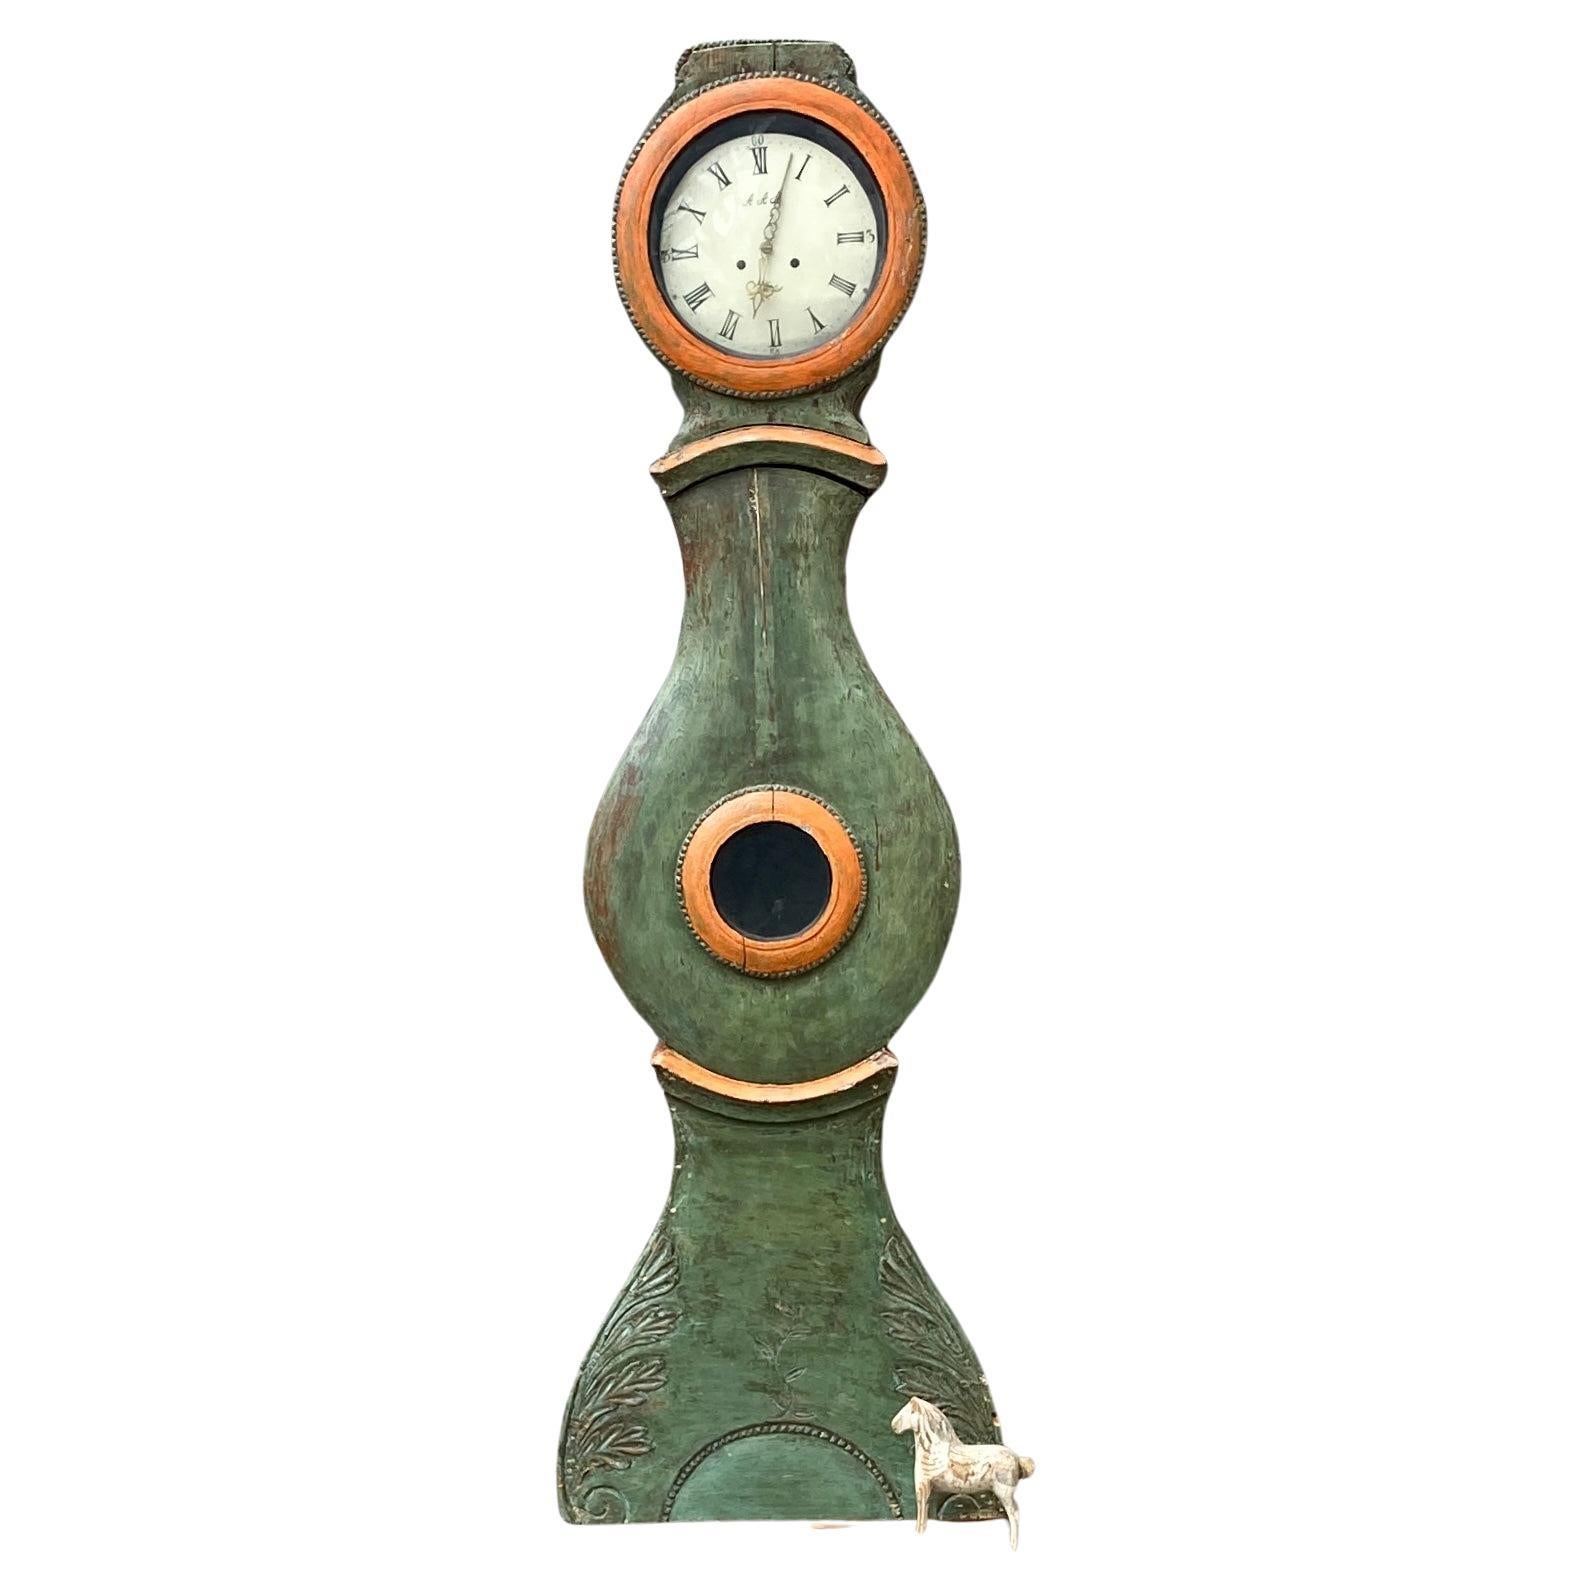 Horloge Mora antiques suédoise datant du début des années 1800, peinte en vert avec des détails orange sur le corps. 
L'horloge est vendue 